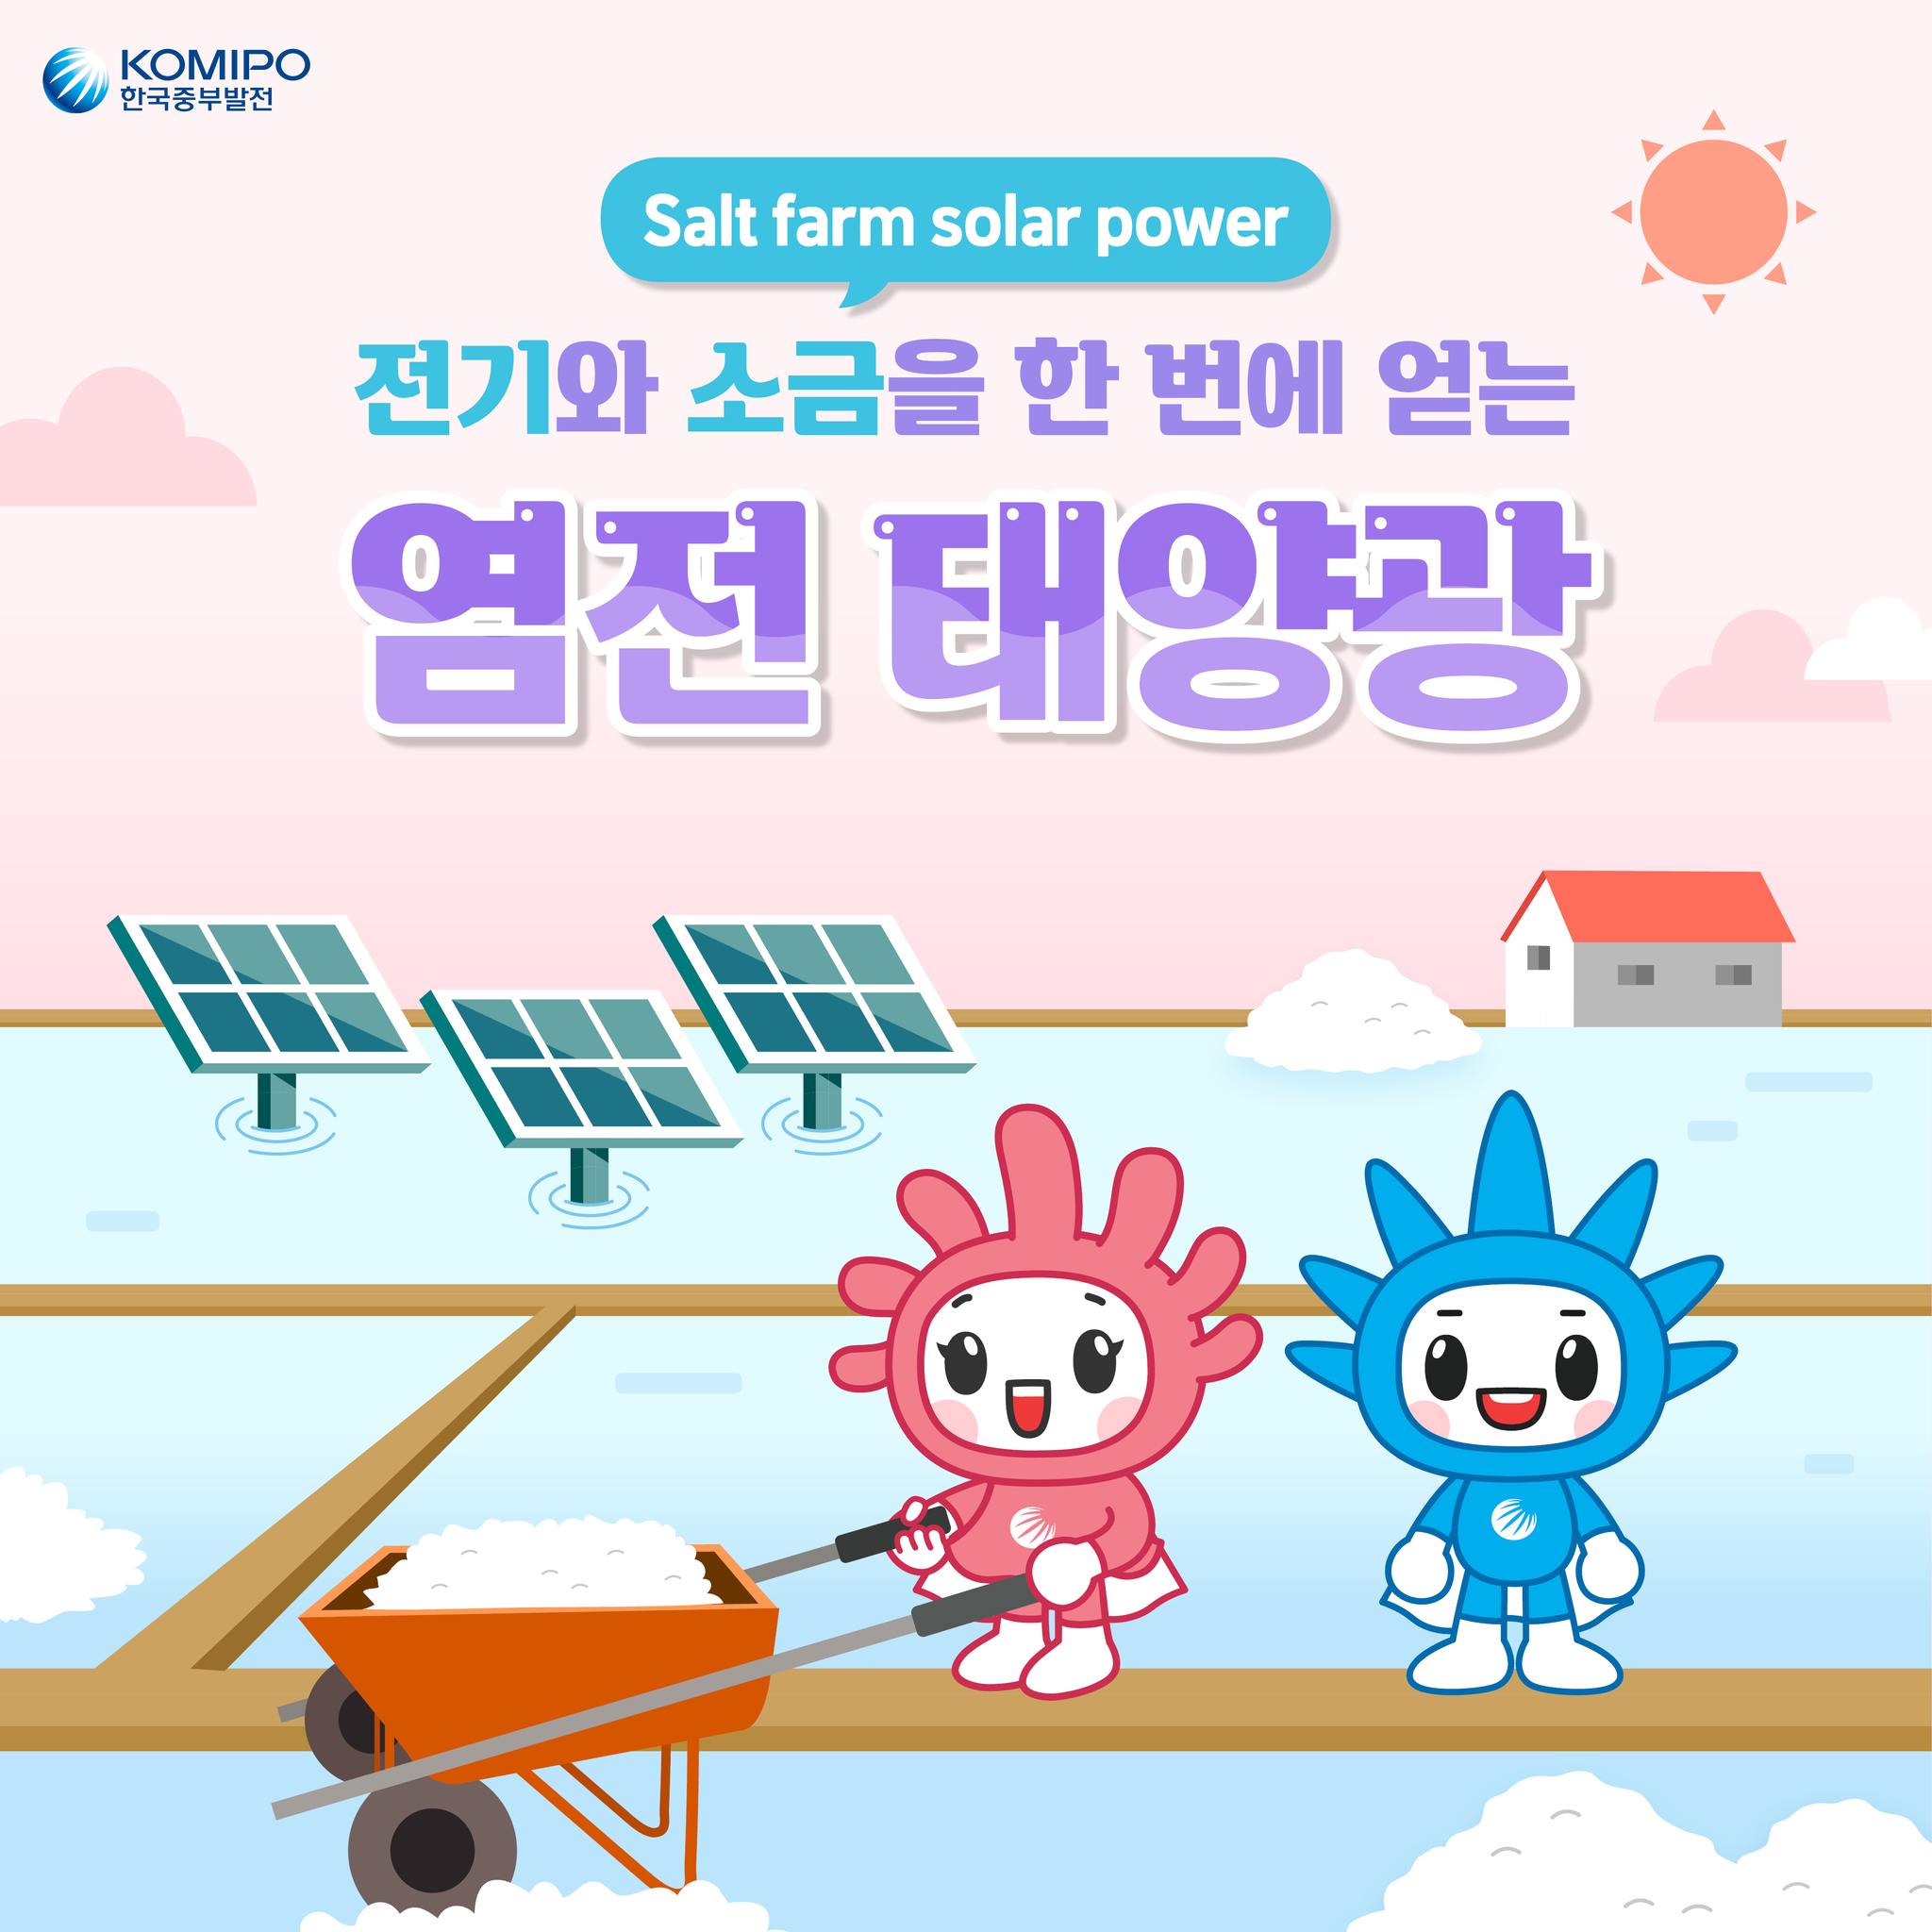 Salt farm solar power 전기와 소금을 한 번에 얻는 염전 태양광